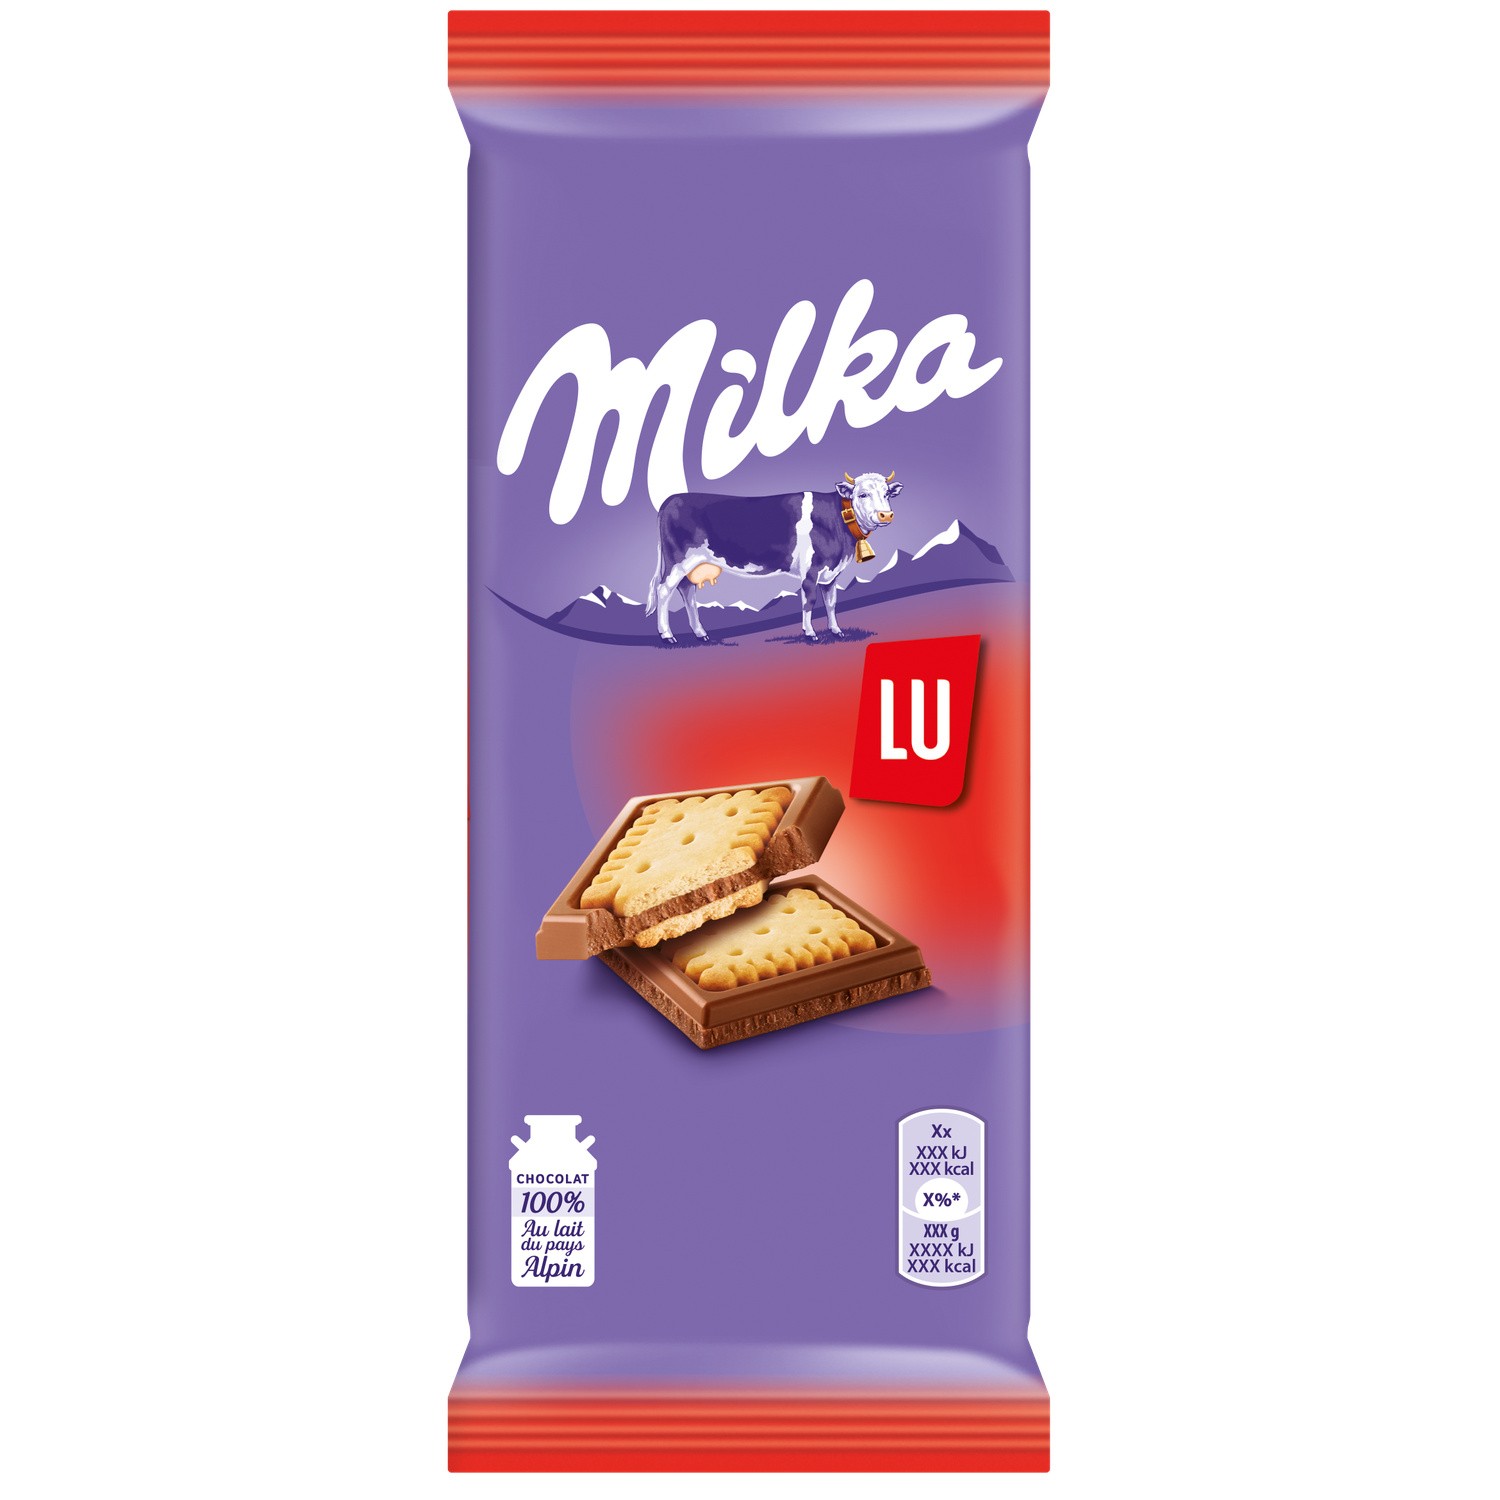 Milk & Biscuit Chocolate Milka X2, Buy Online